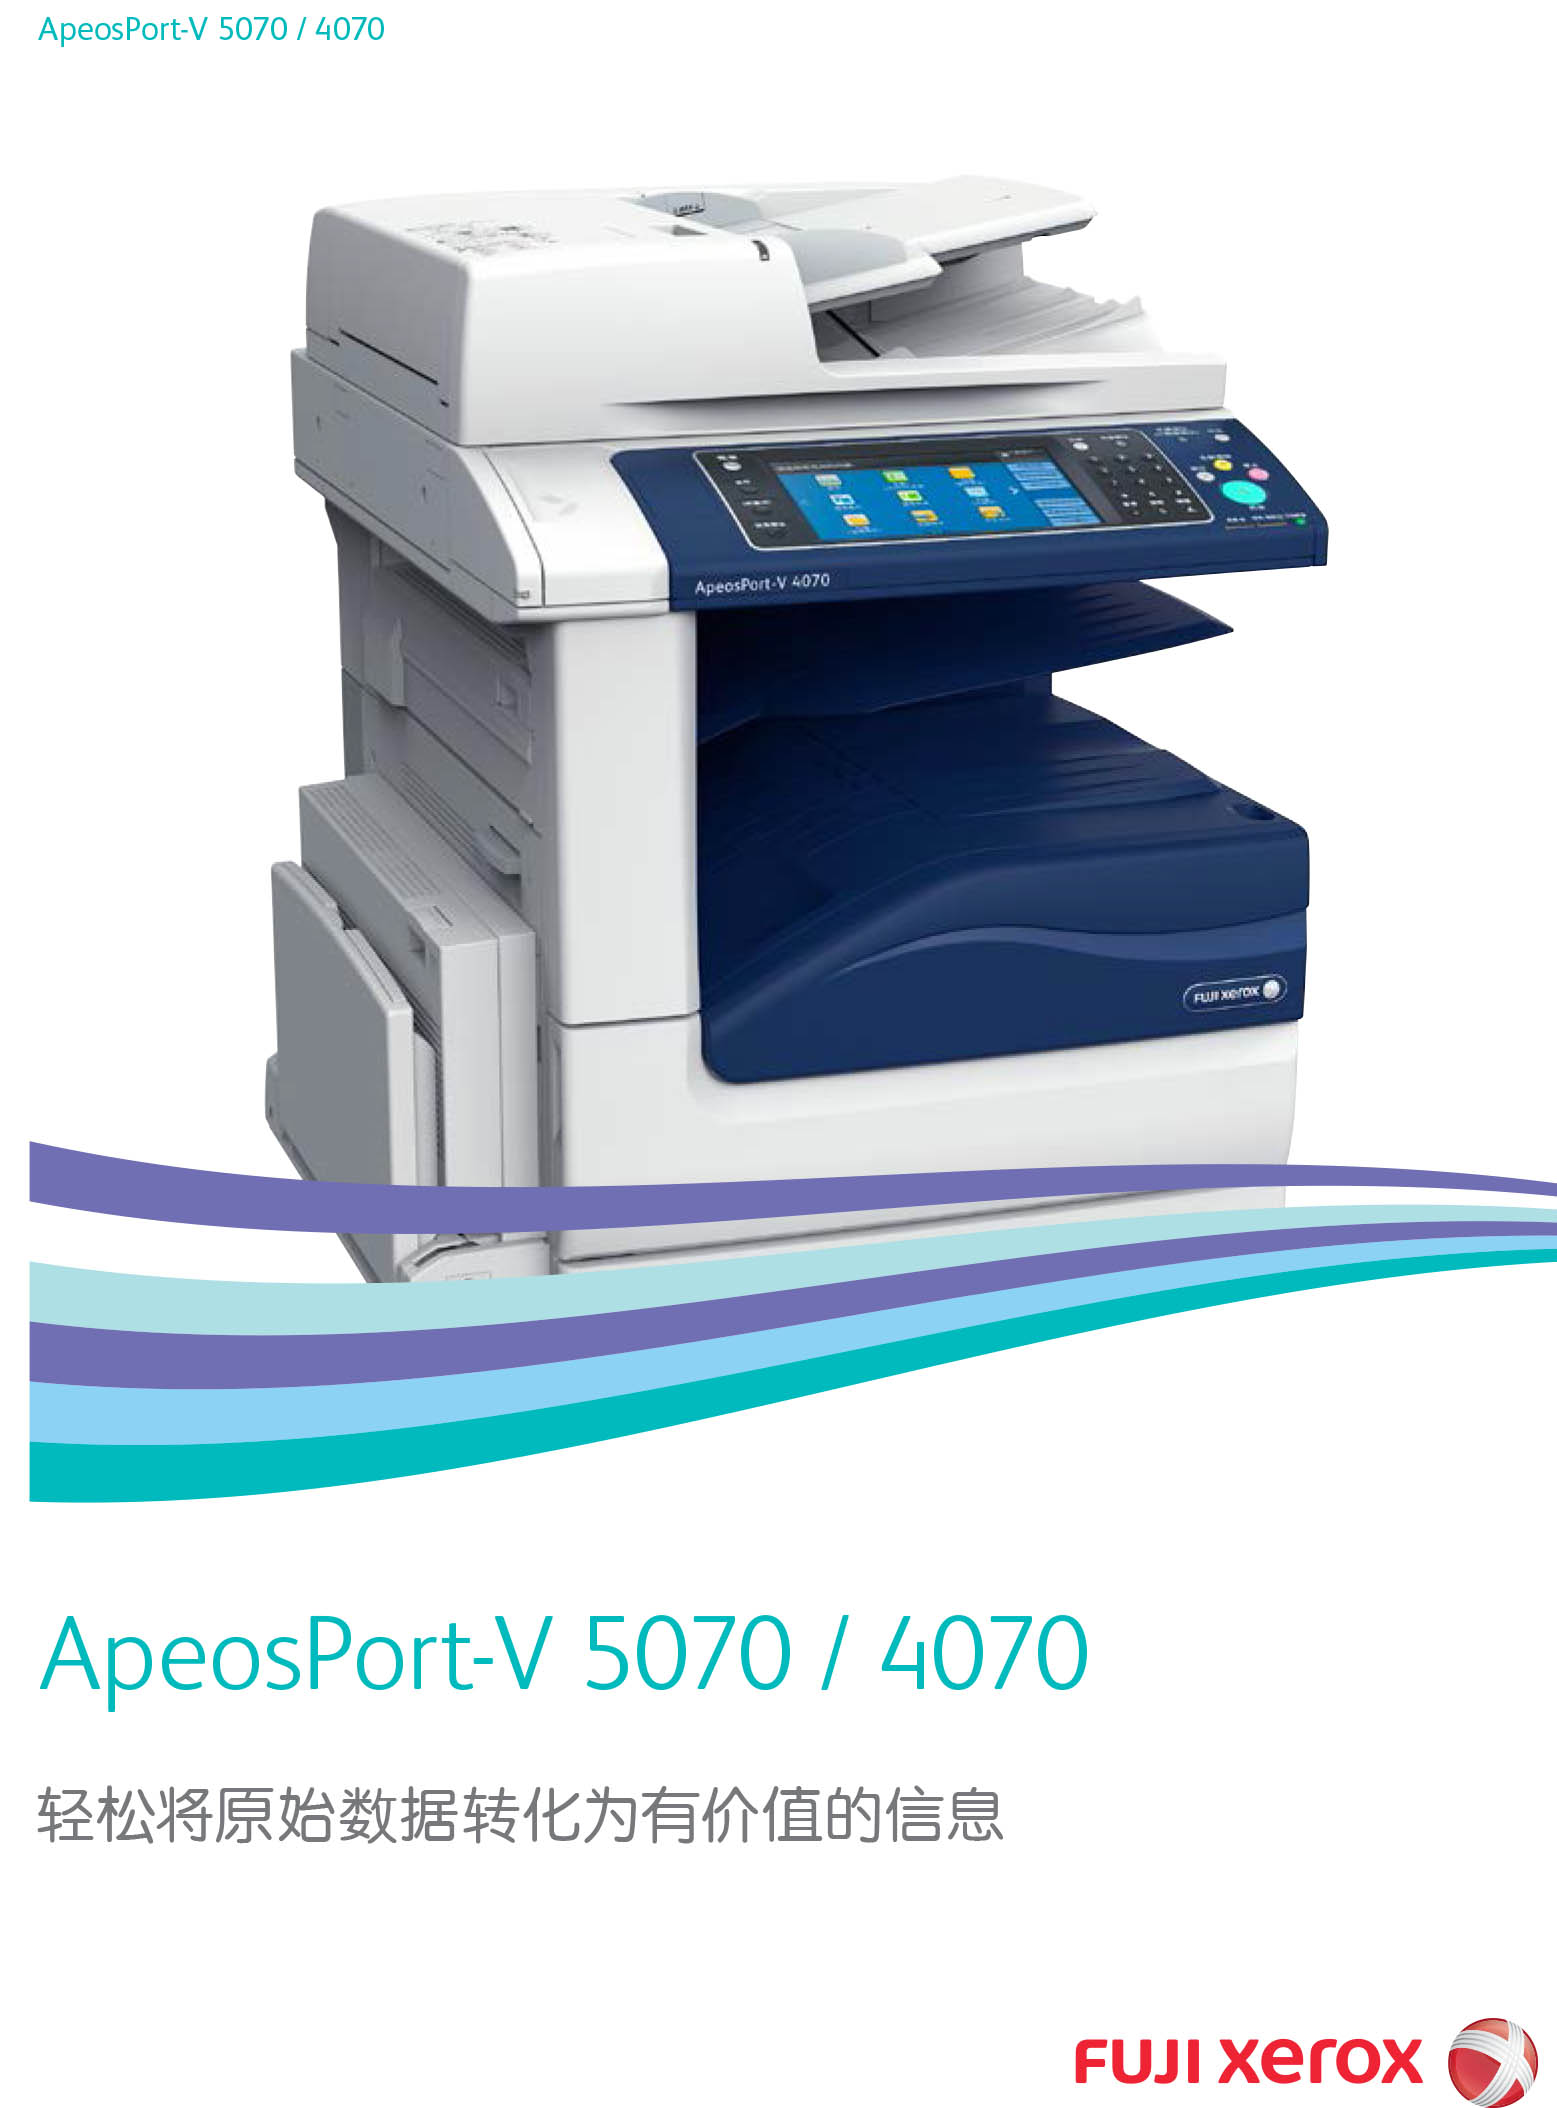 ApeosPort-V 5070 / 4070 